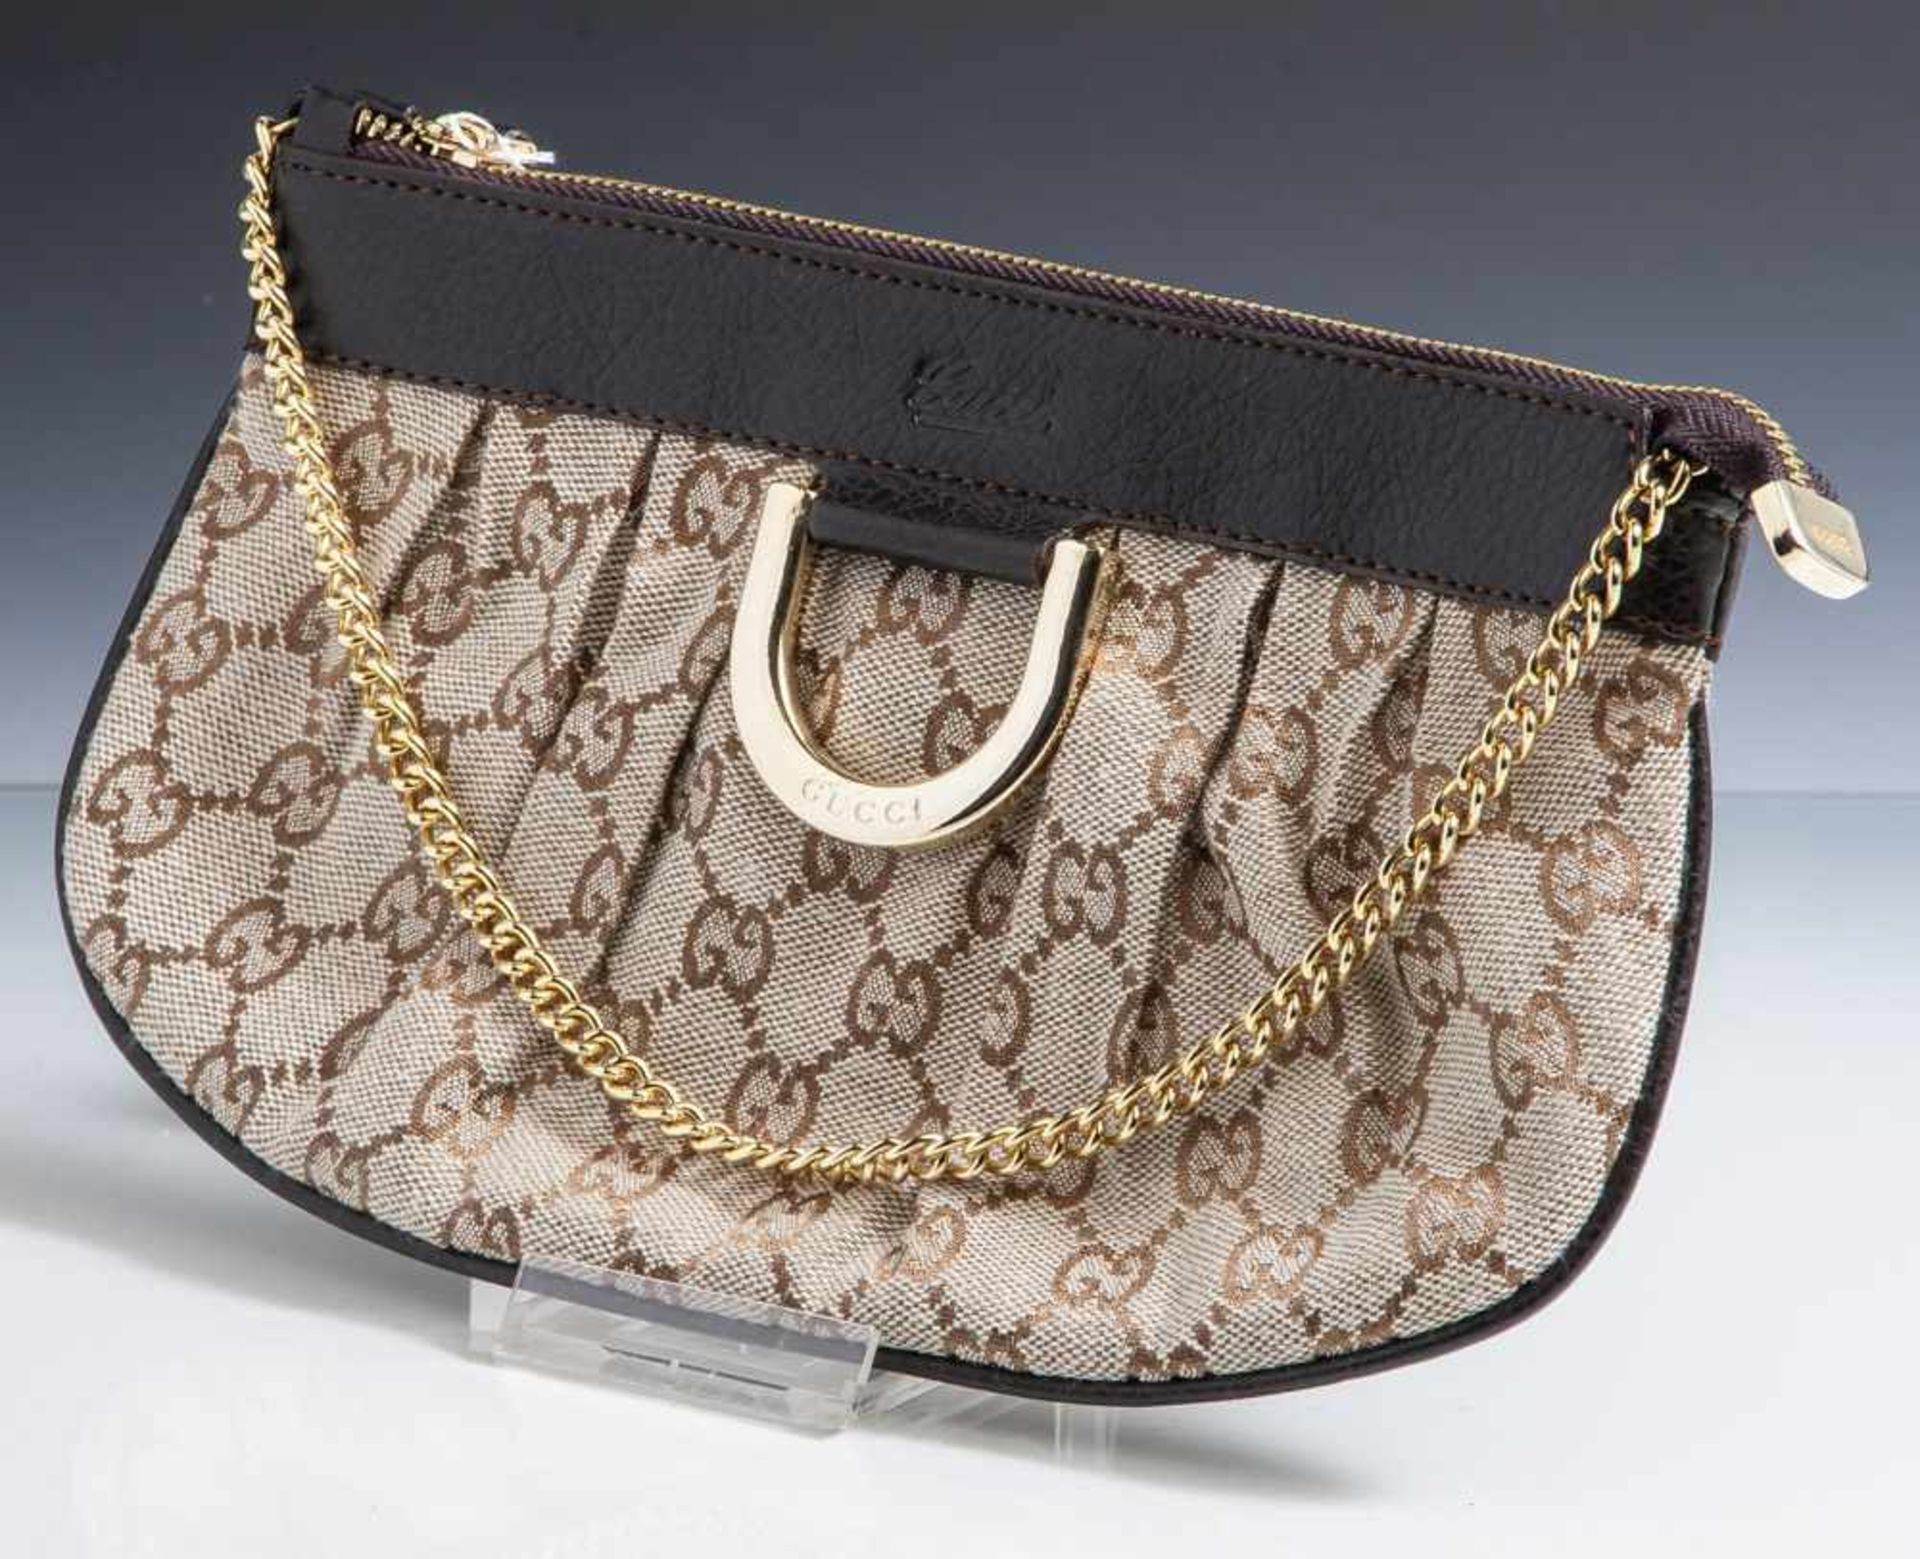 Gucci Handbag, kleine Handtasche aus Stoff u. Leder, Tragegriff Metall vergoldet. 1